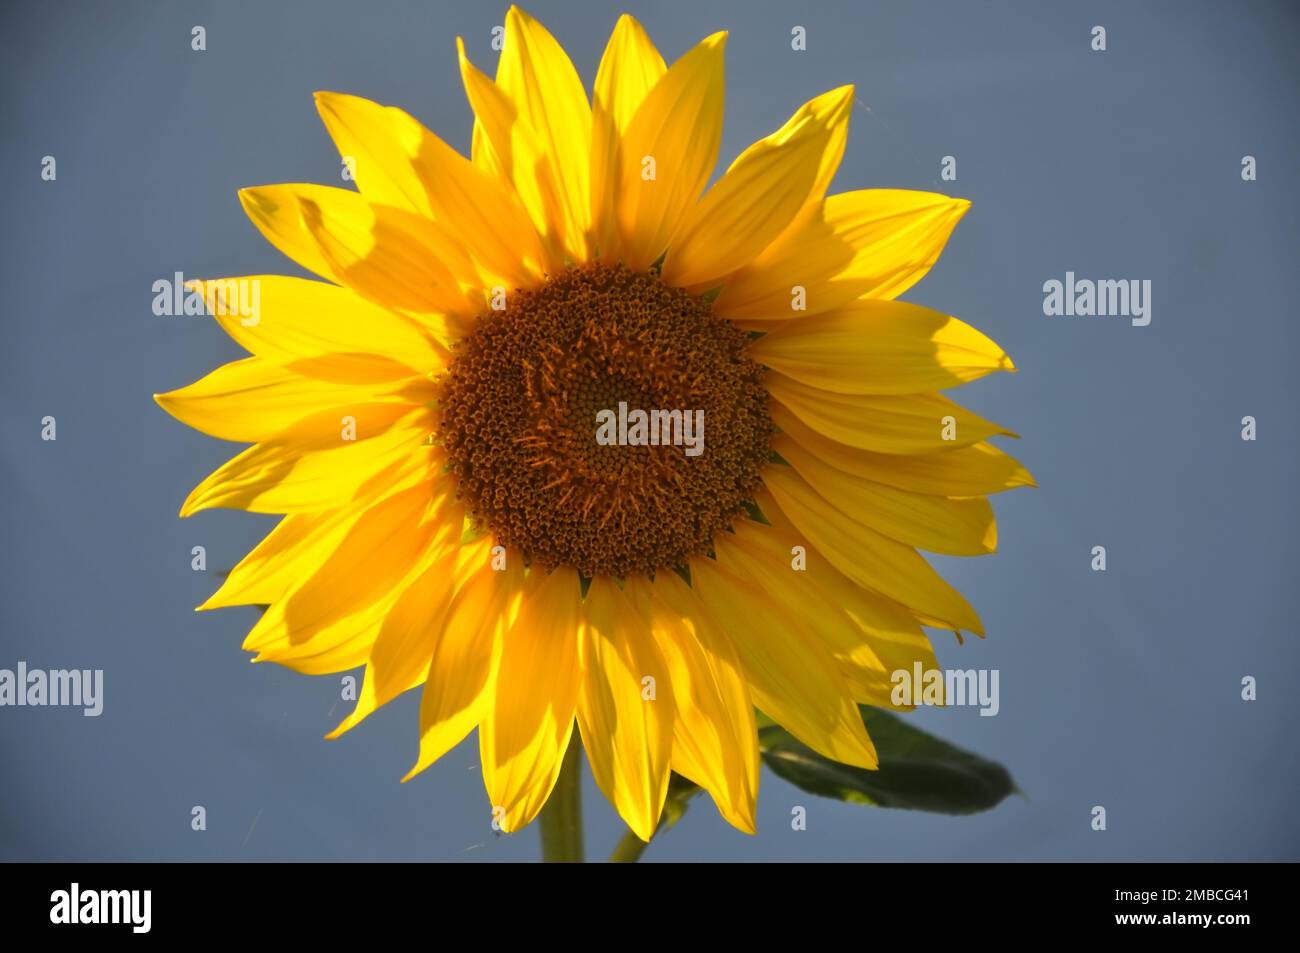 Sonnenblume vor blauem Himmel. Eine große gelbe Sonnenblume mit blauem Himmelshintergrund. Big Yellow Sunflower Filament In Blue Sky Background Sunflower. Stockfoto